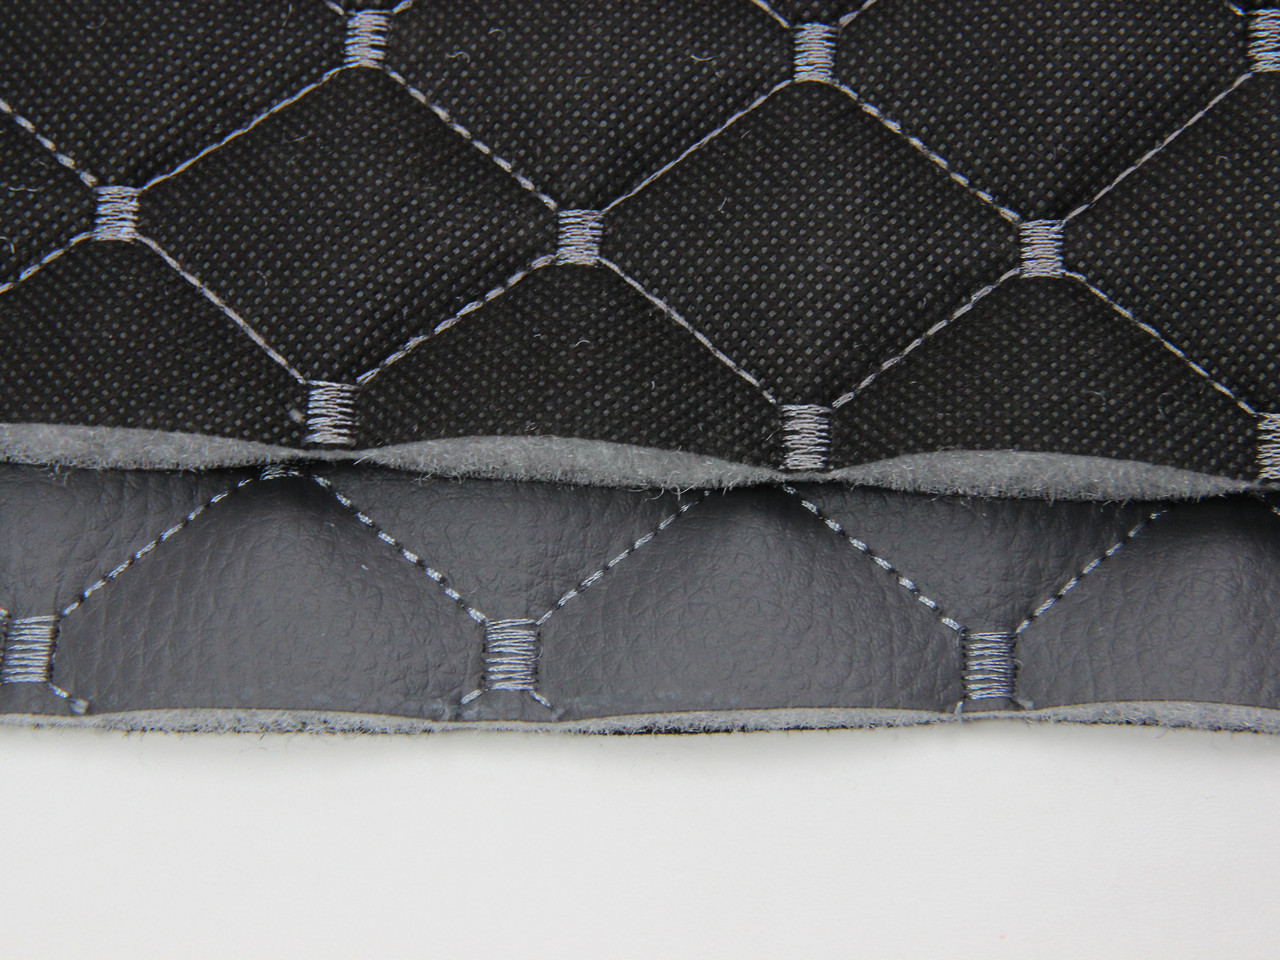 Кожзам стёганый темно-серый «Ромб» (прошитый серой нитью) дублированный синтепоном и флизелином, ширина 1,35м детальная фотка